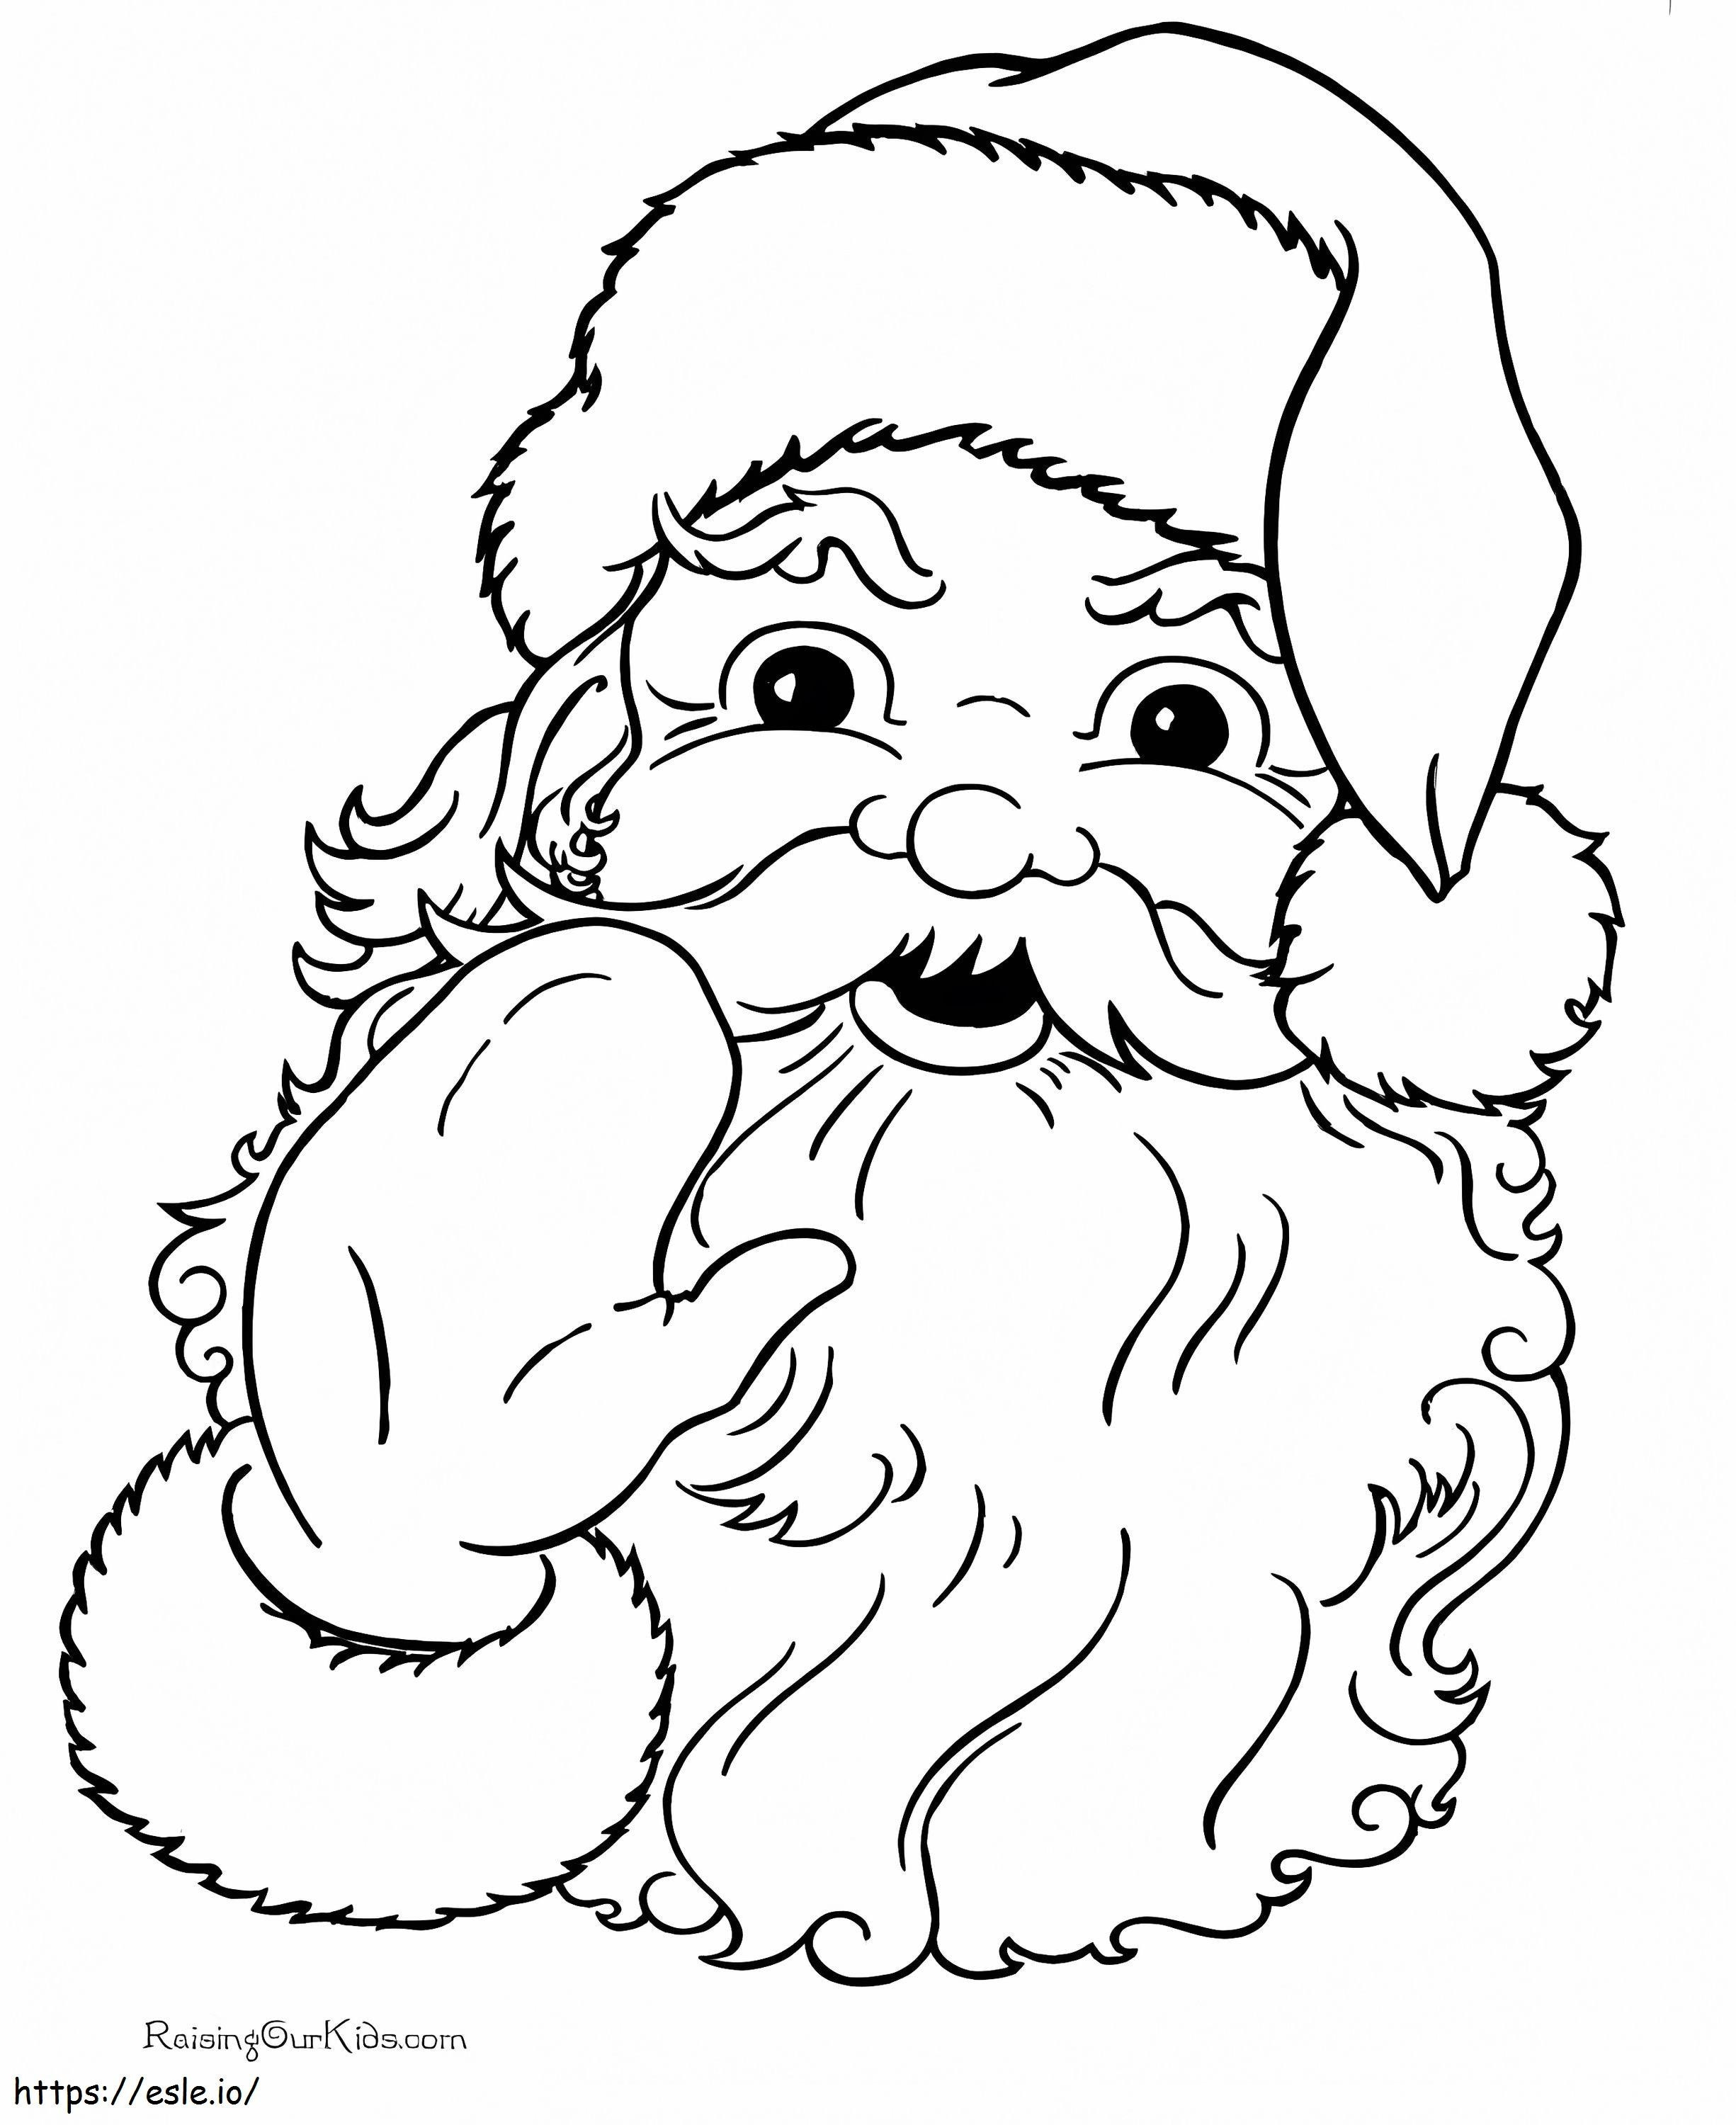 Santa Claus Say Hello coloring page